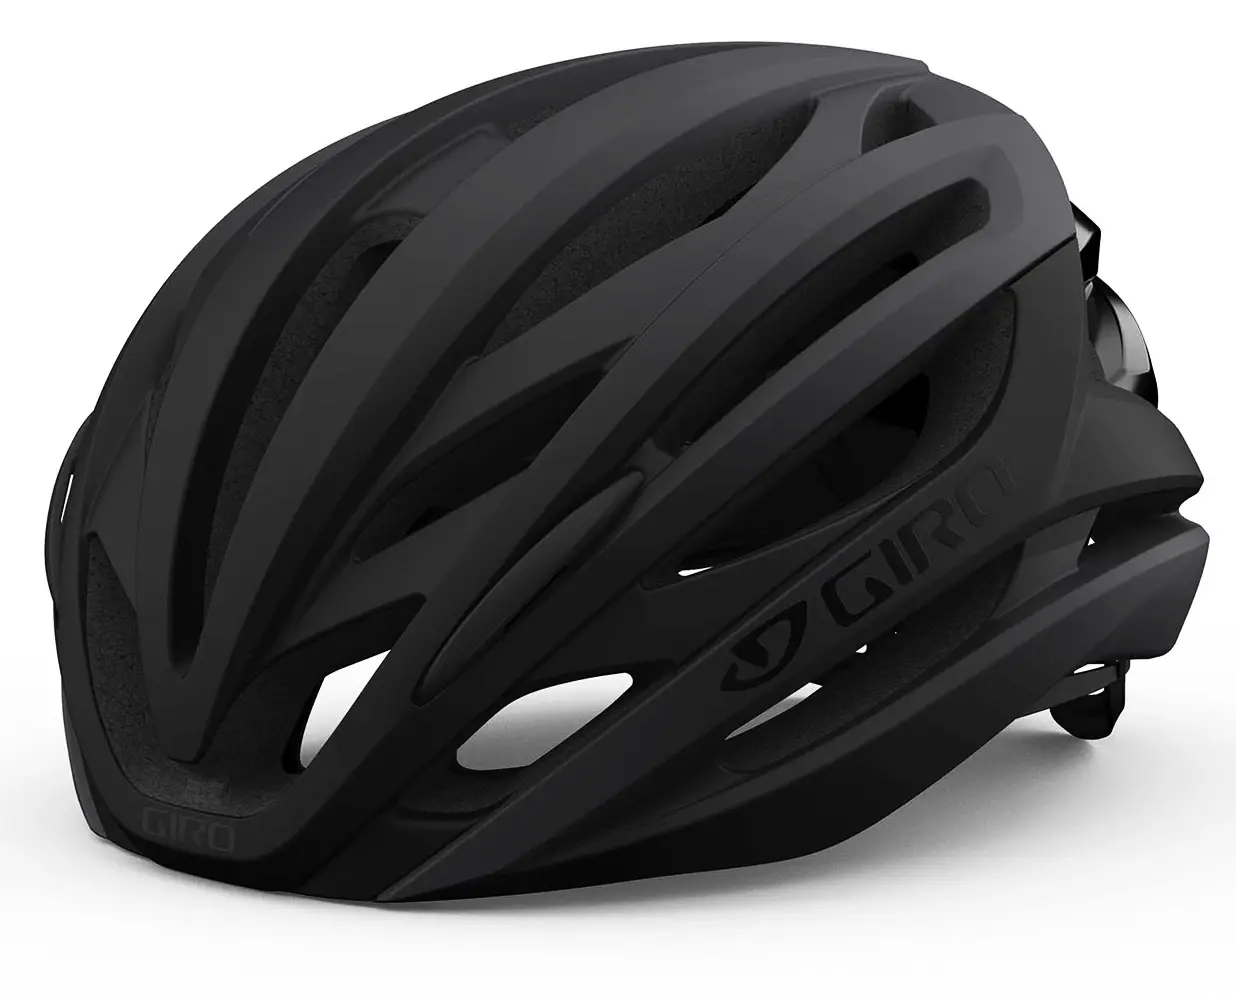 Cyklistická helma Giro  Syntax